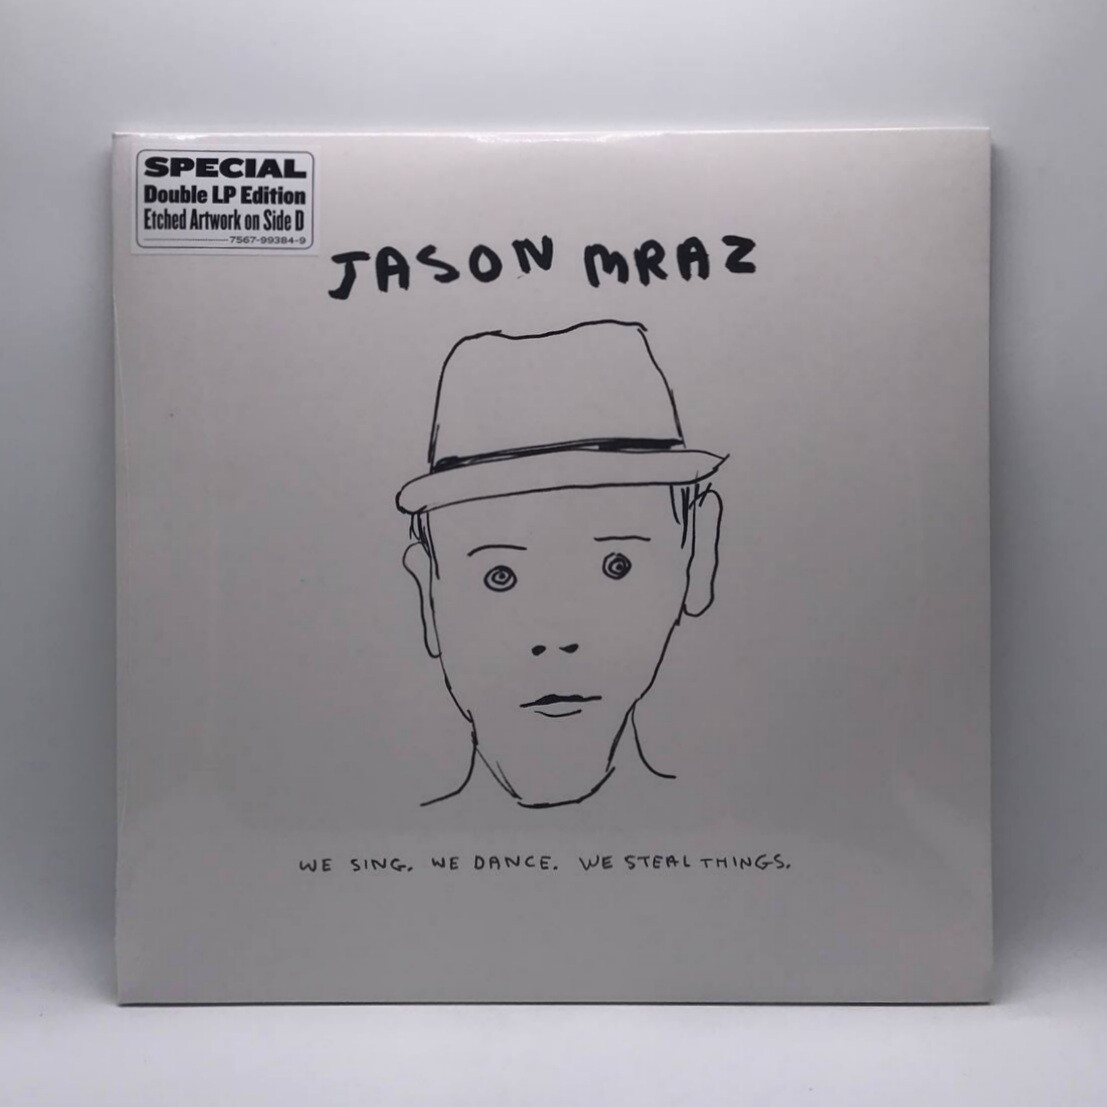 [USED] JASON MRAZ -WE SING, WE DANCE, WE STEAL THINGS- 2xLP